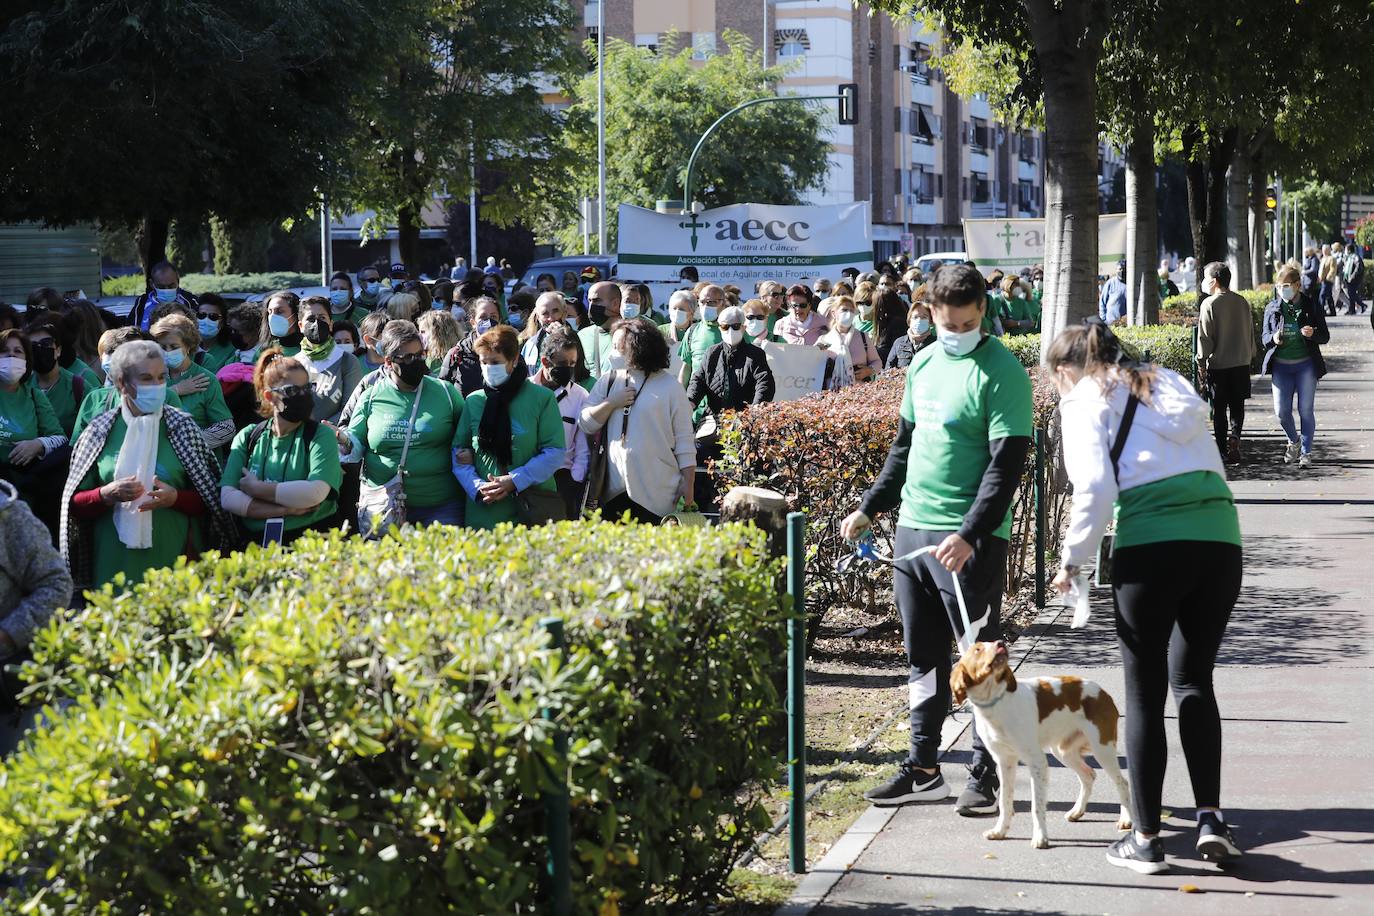 Felipe y Alfonso Reyes apadrinan la carrera contra el cáncer de Córdoba, en imágenes